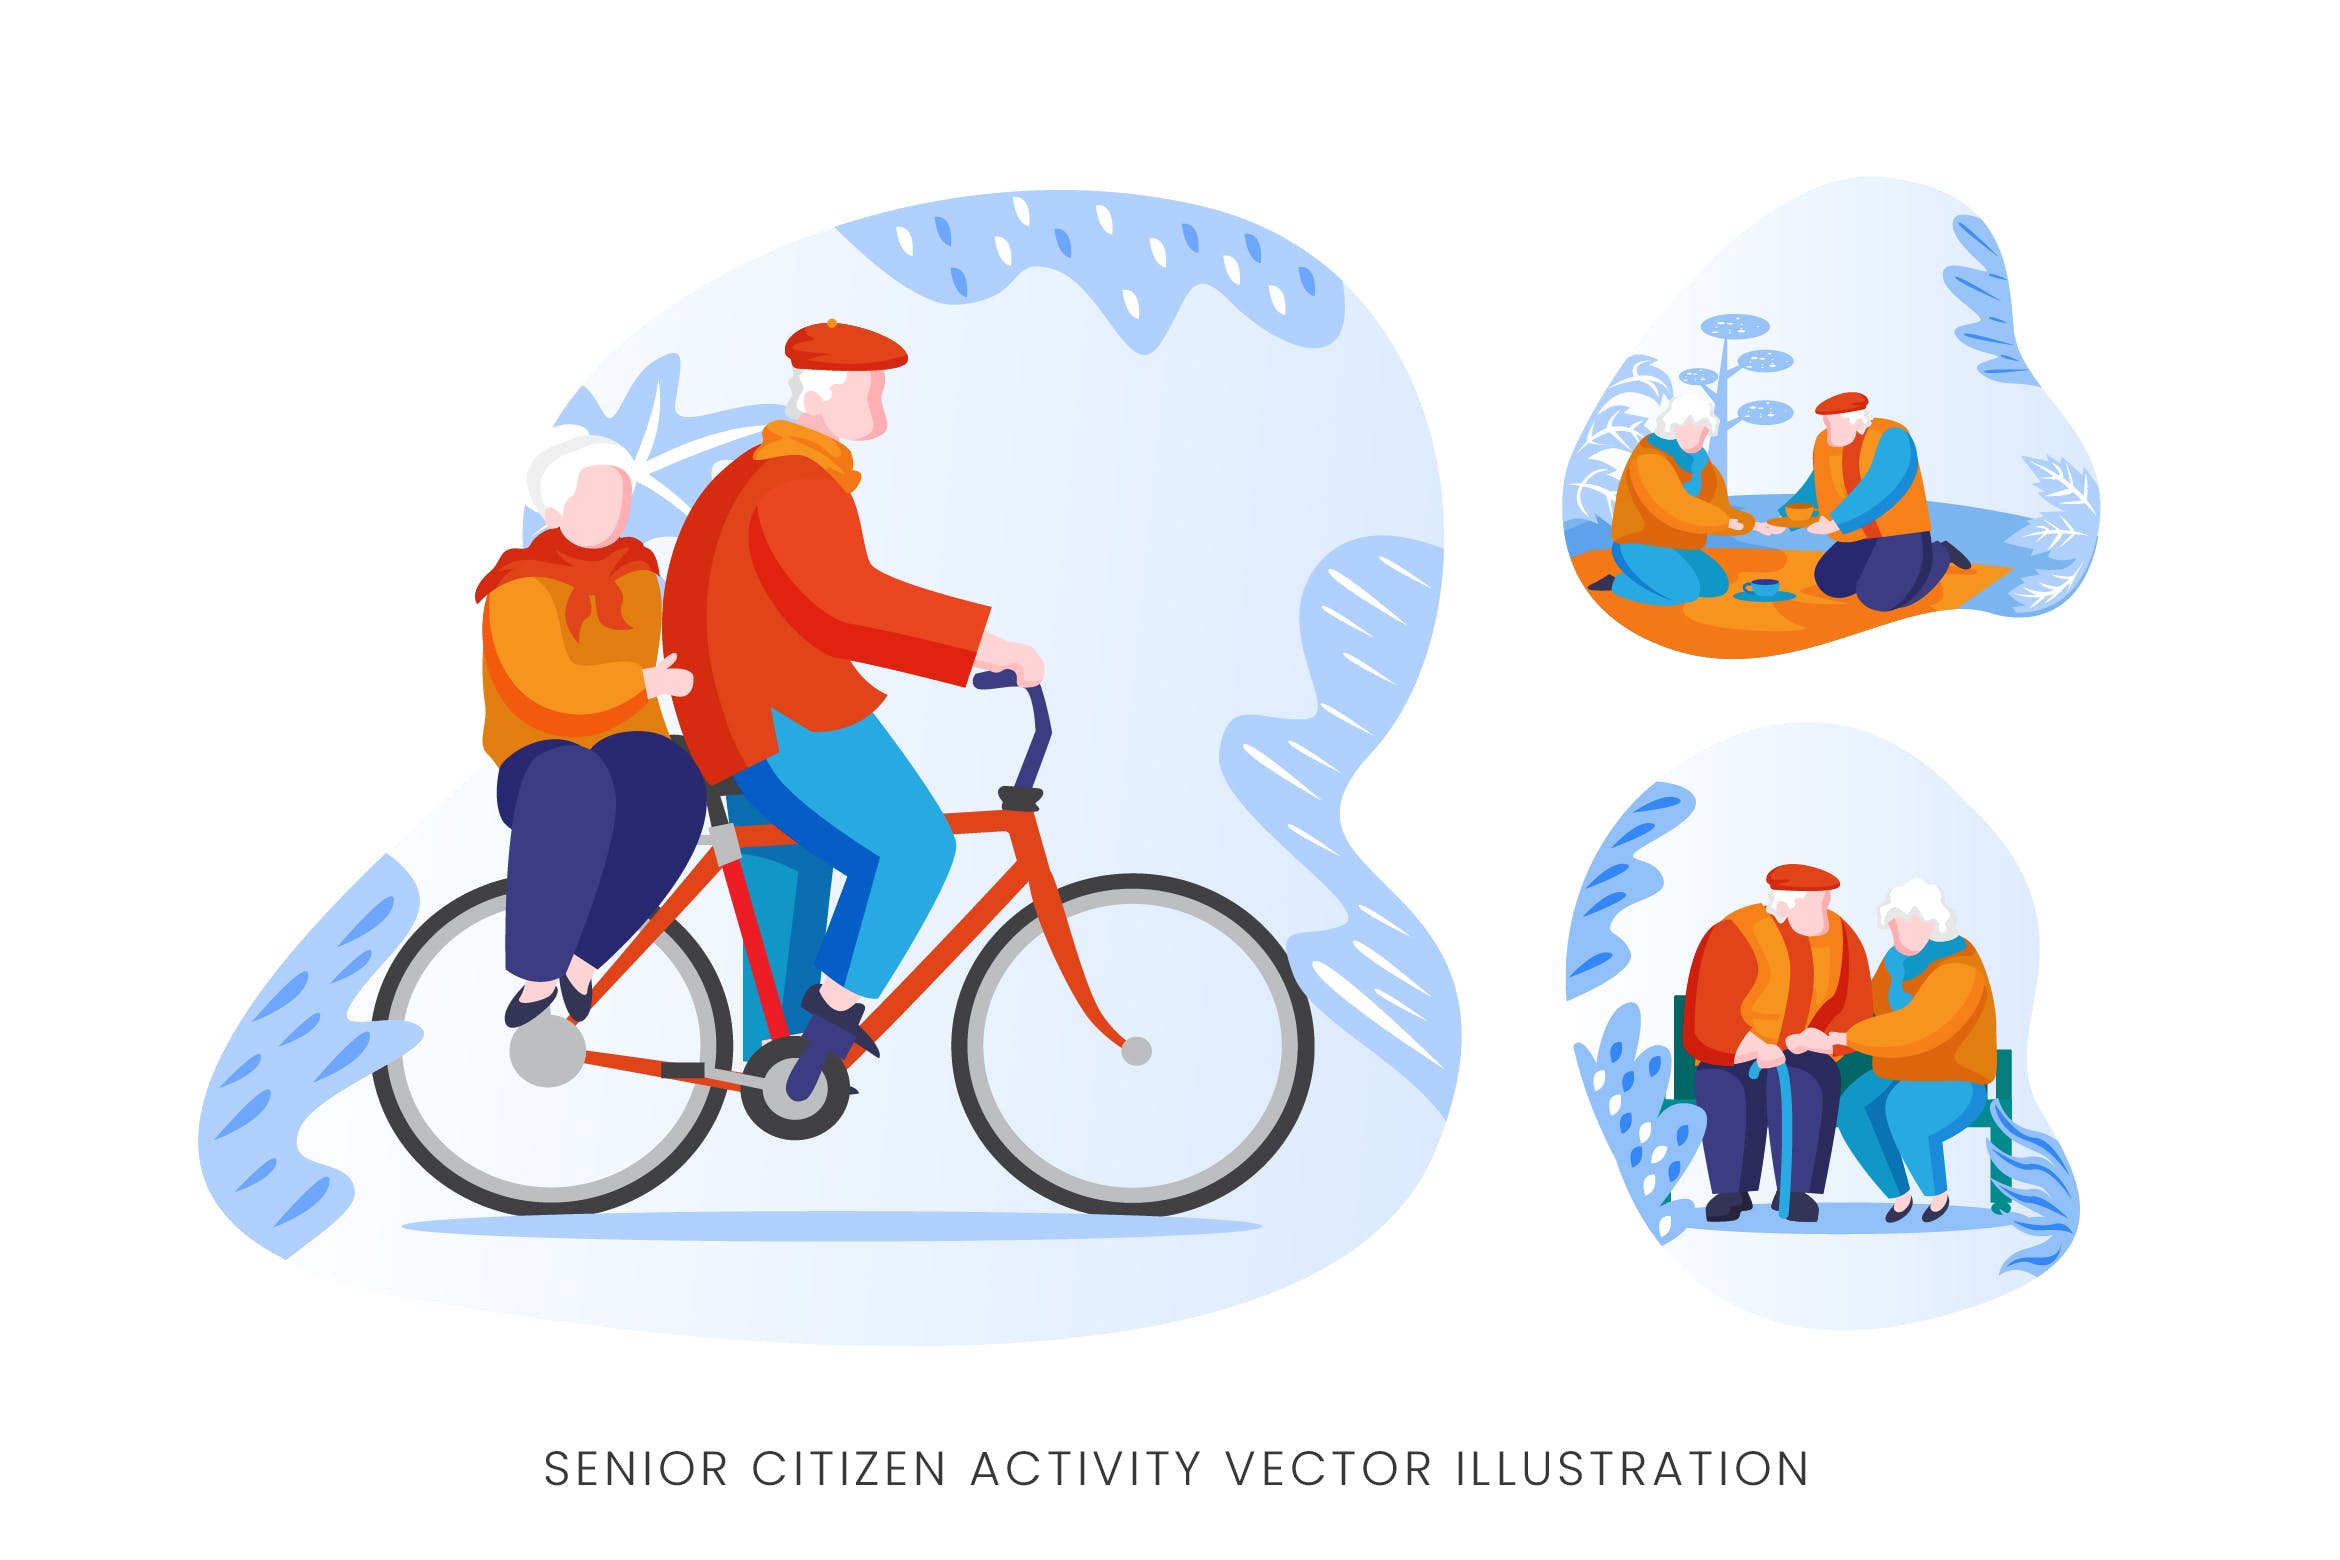 老年人生活人物形象矢量手绘非凡图库精选设计素材 Senior Citizen Vector Character Set插图